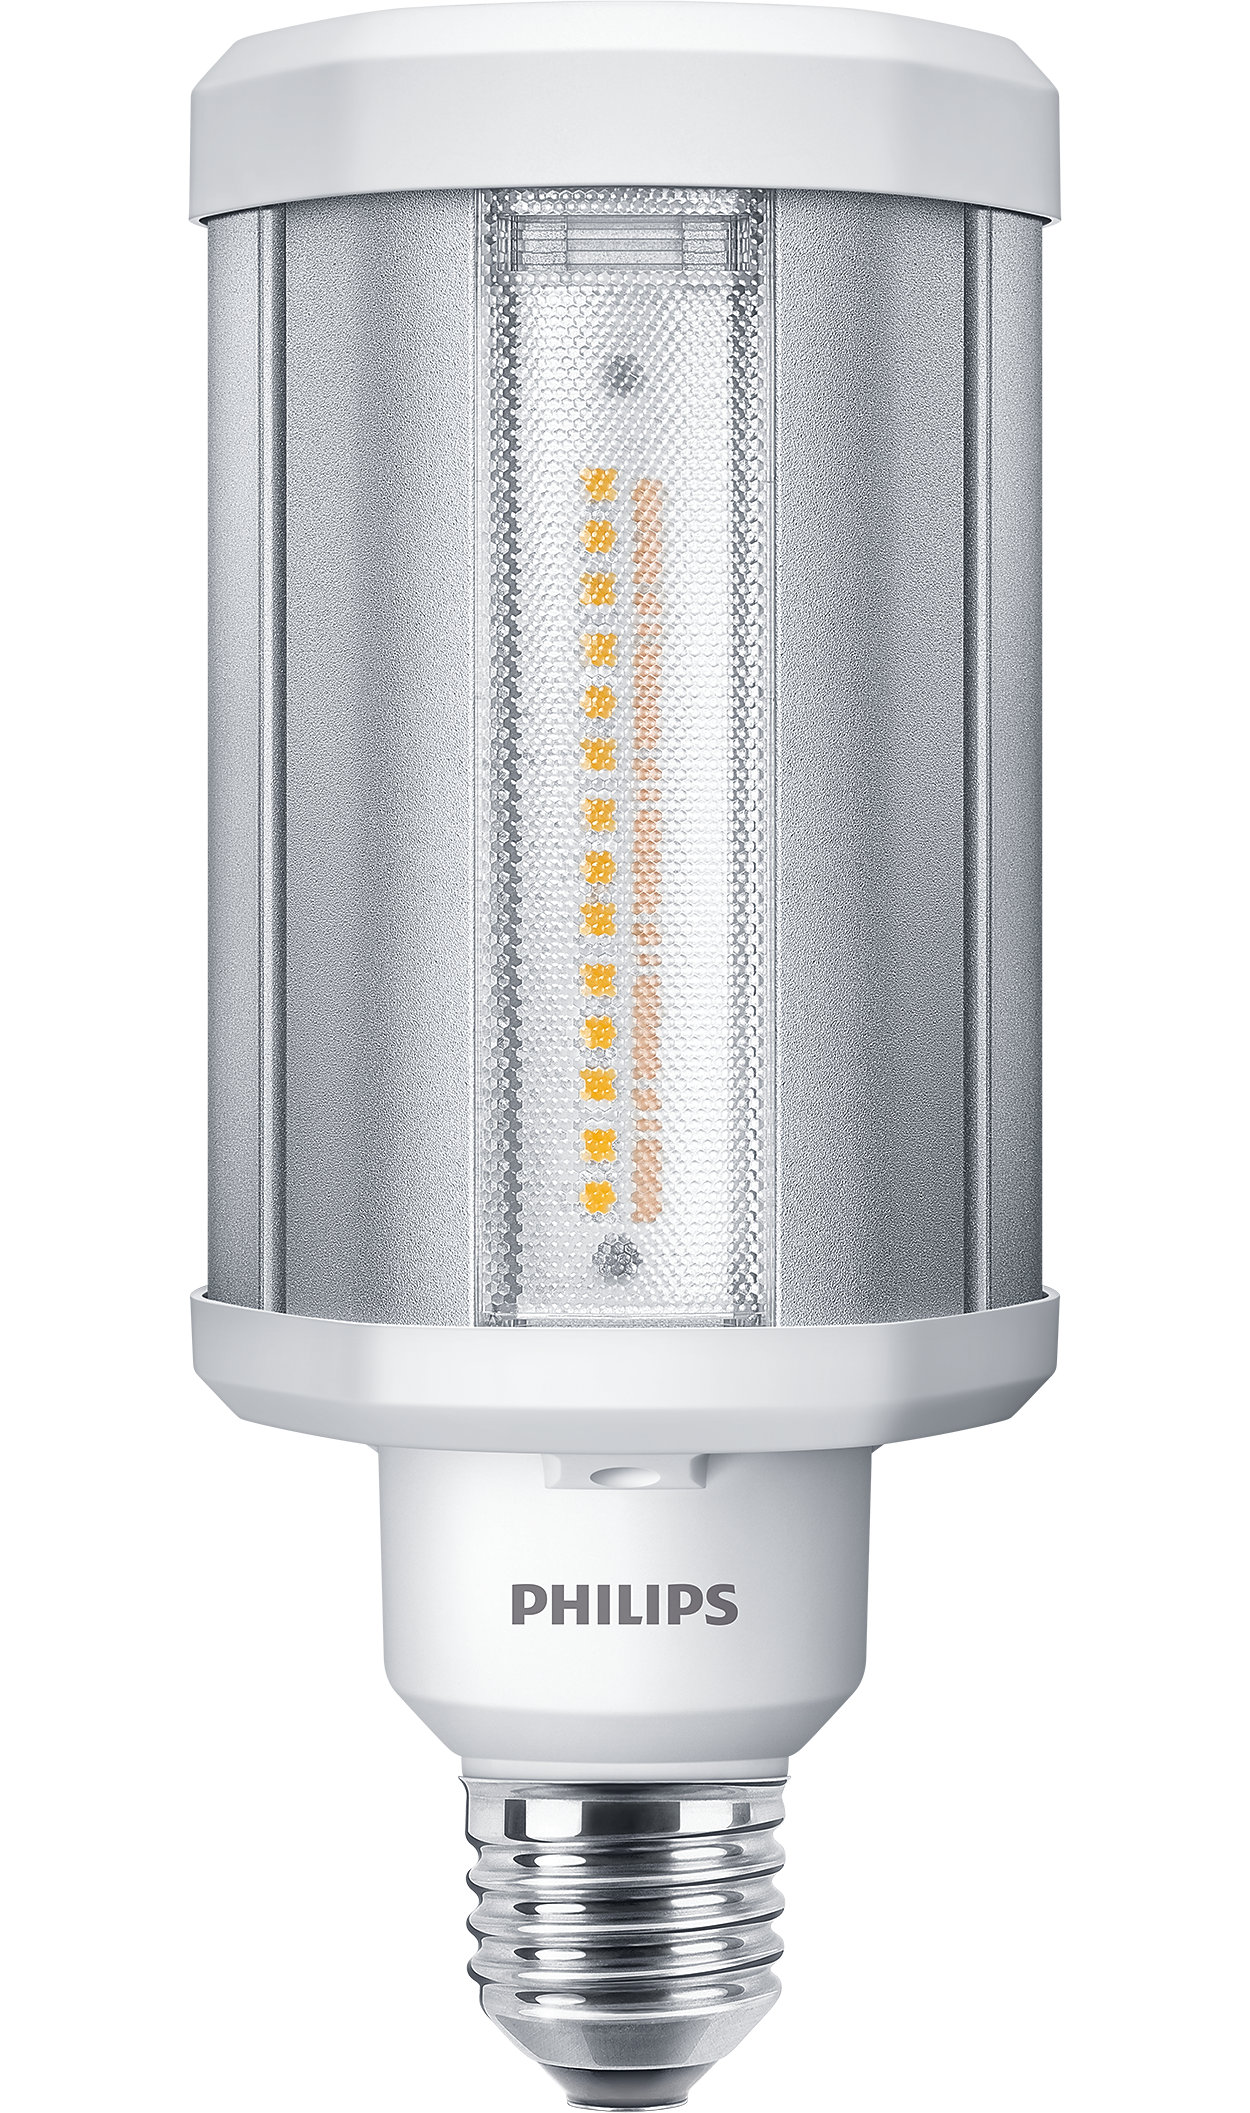 La meilleure solution LED pour le remplacement des lampes à décharge haute intensité (HID, High-Intensity Discharge)